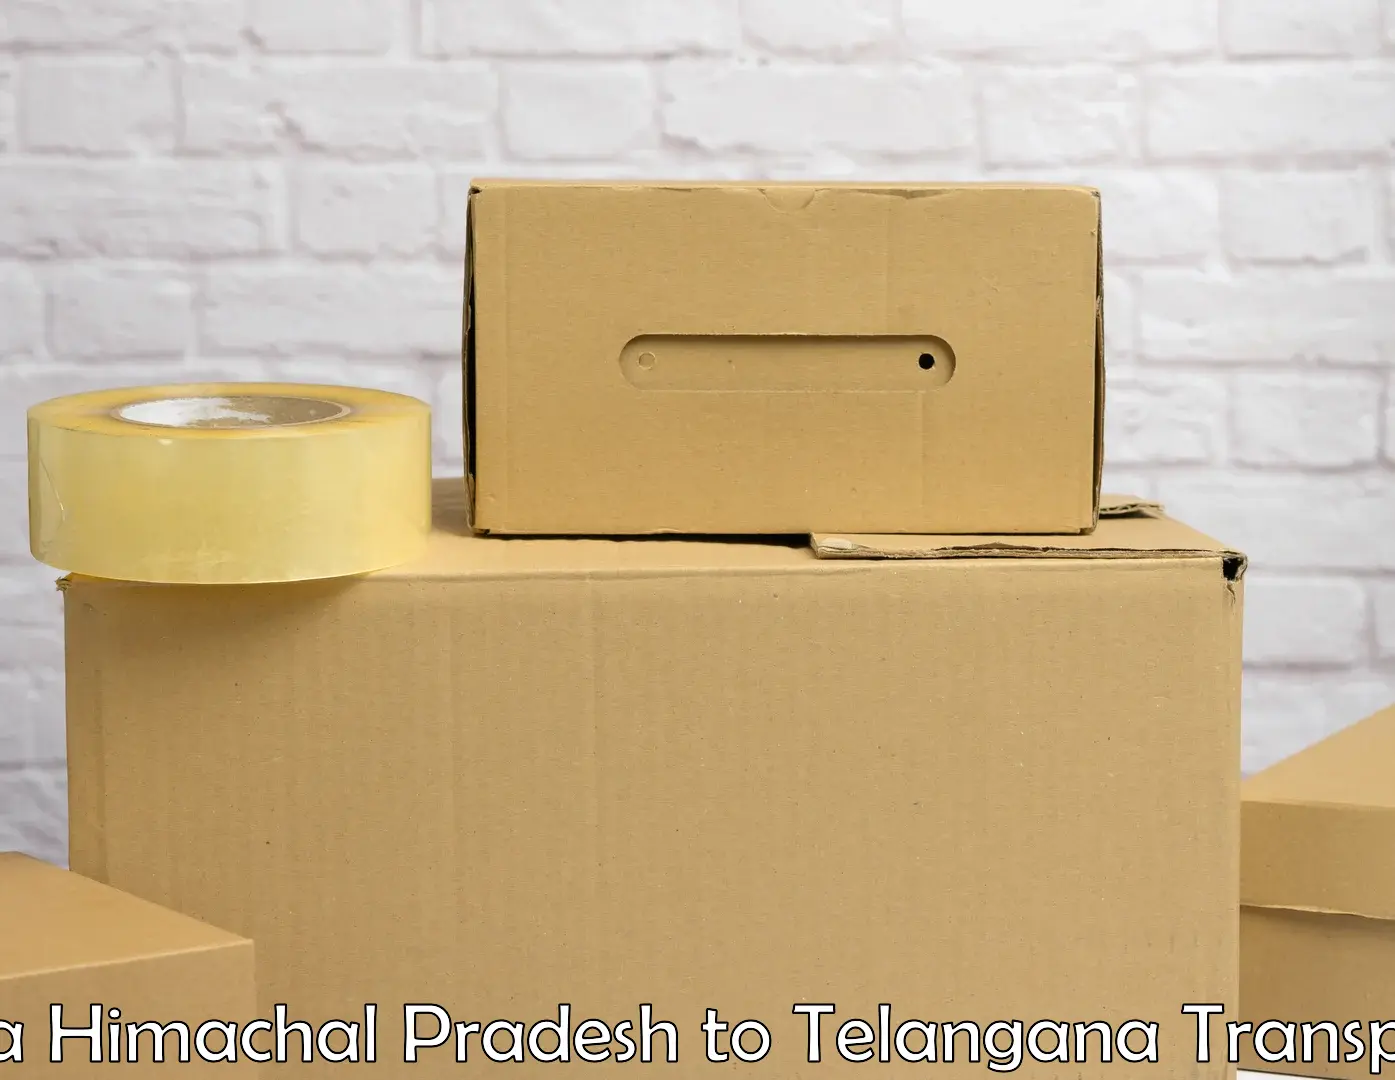 Shipping partner Una Himachal Pradesh to Telangana